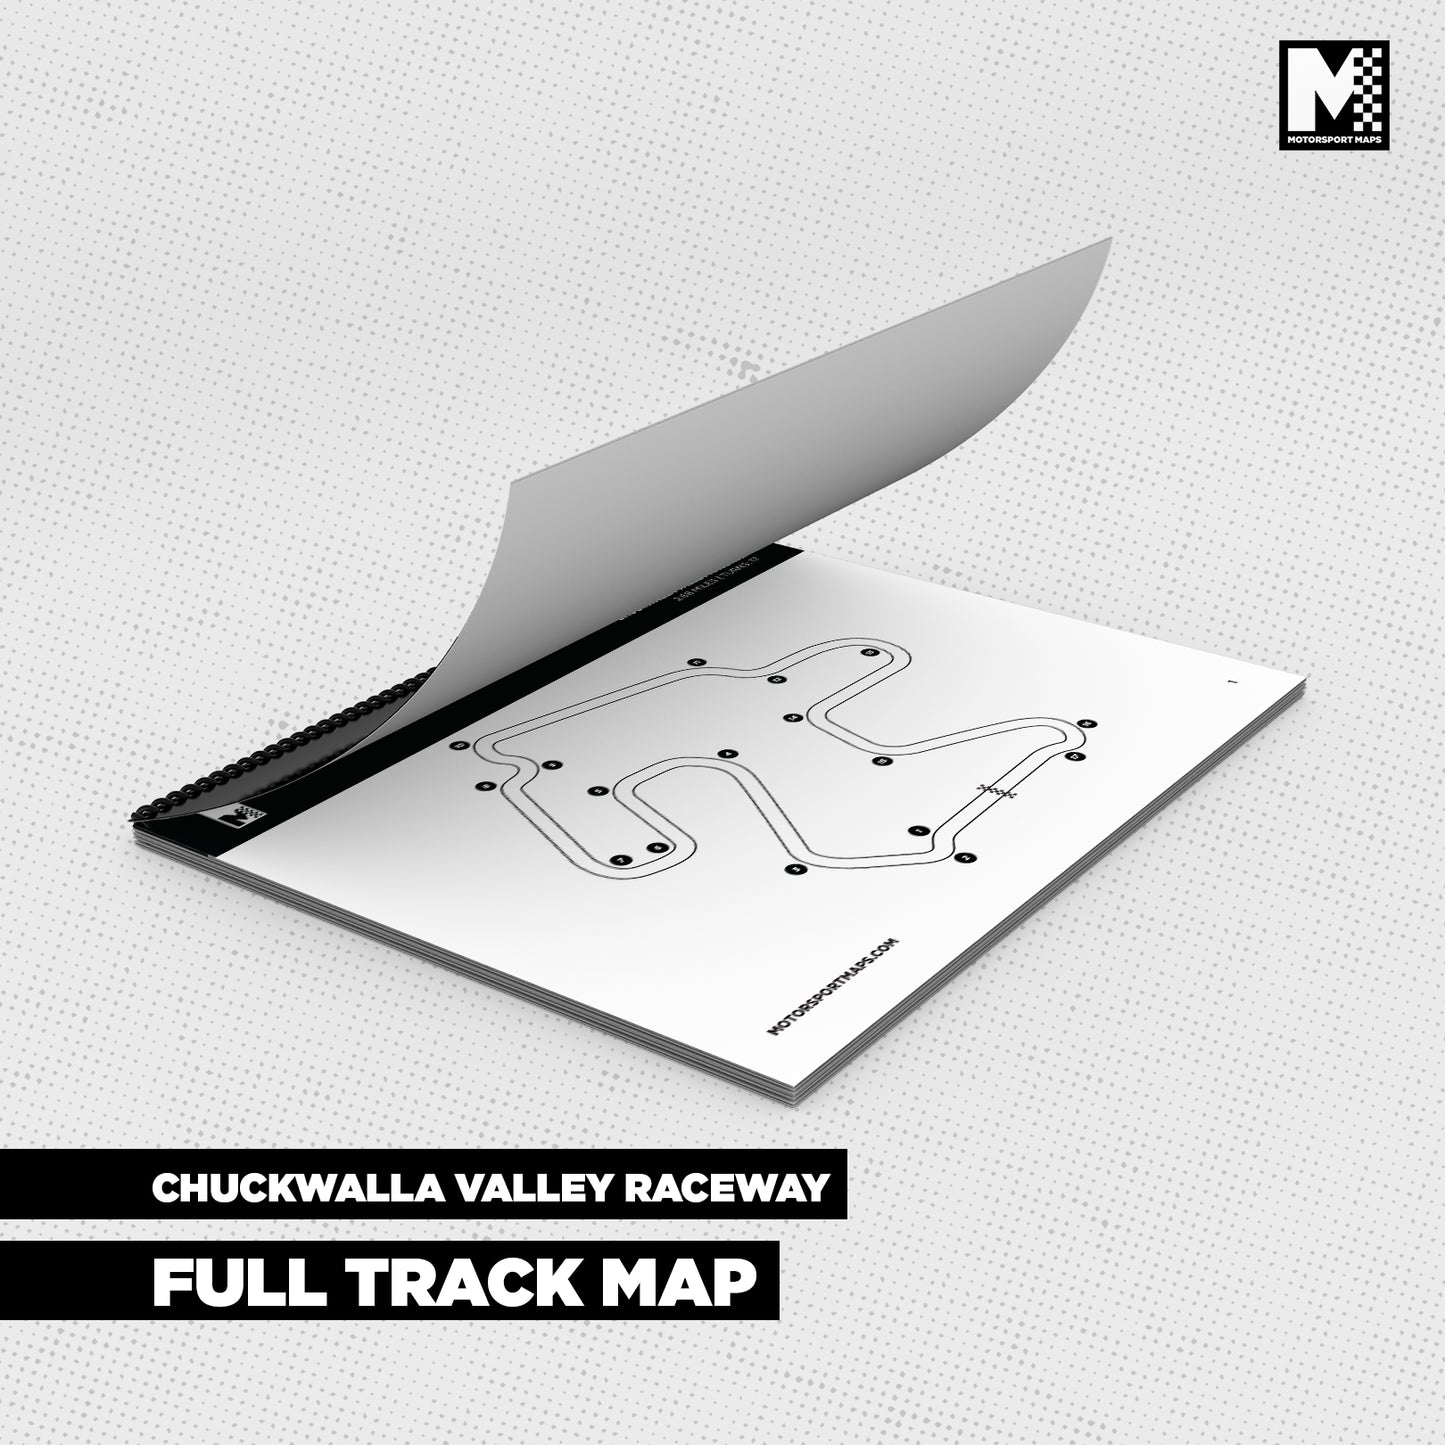 Chuckwalla Valley Raceway